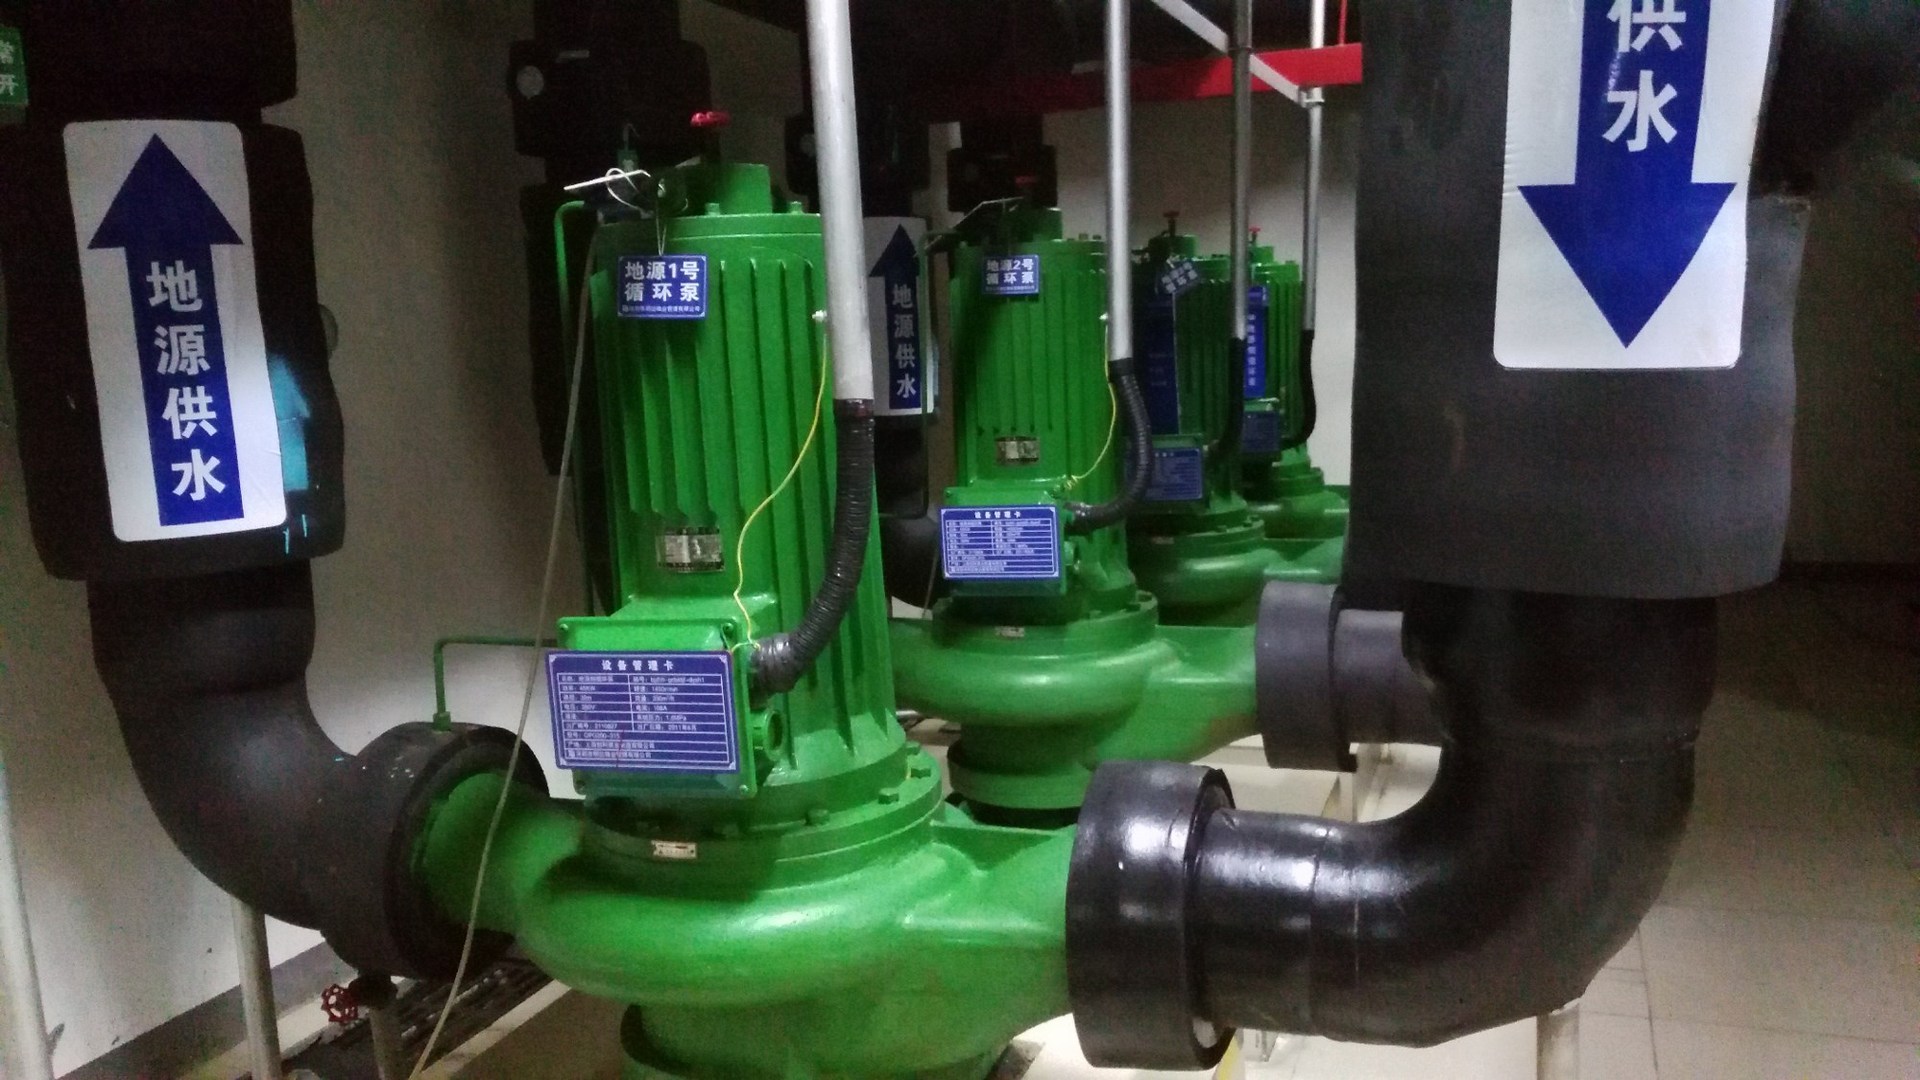 3#热泵主机在t-g系统下运行 (制热水模式) 蒸发器对应地源侧循环 阀门